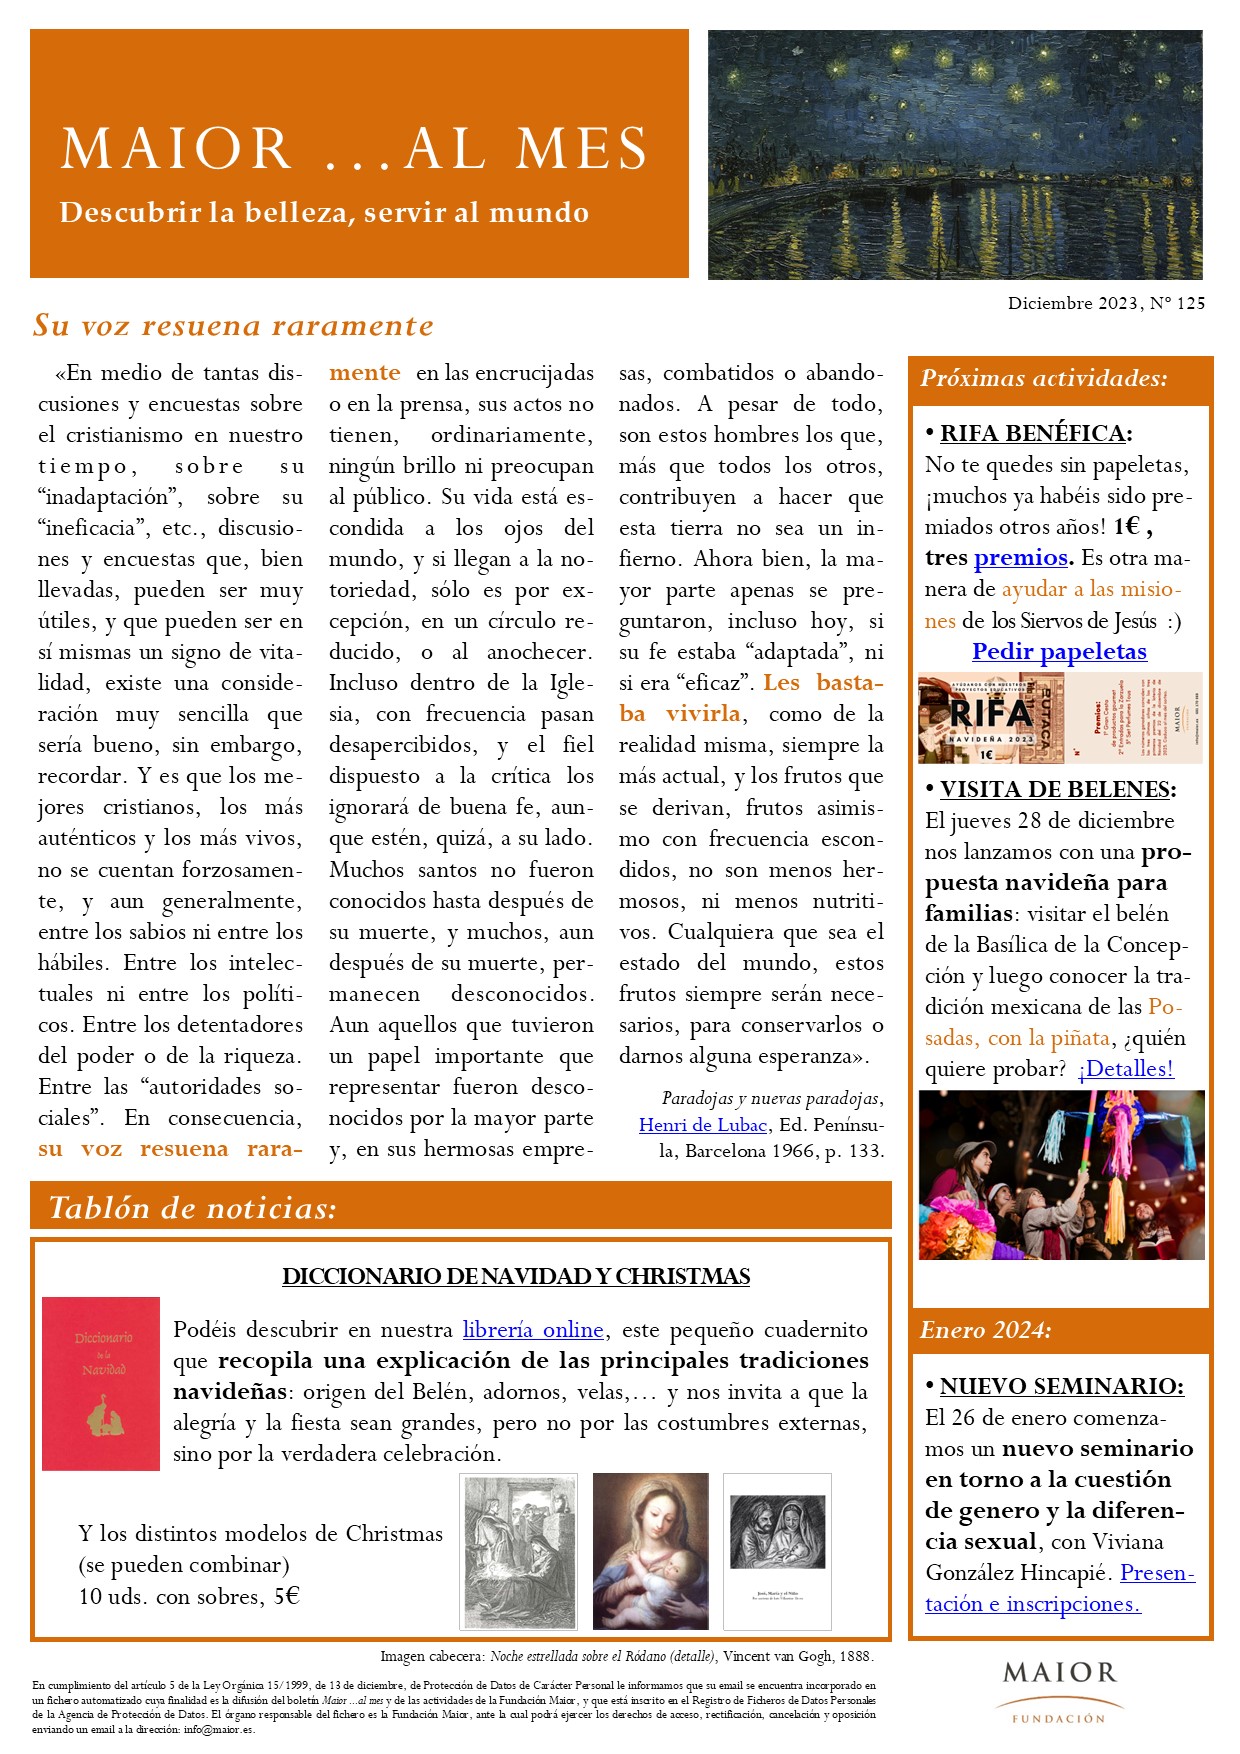 Boletín mensual de noticias y actividades de la Fundación Maior. Edición de diciembre 2023